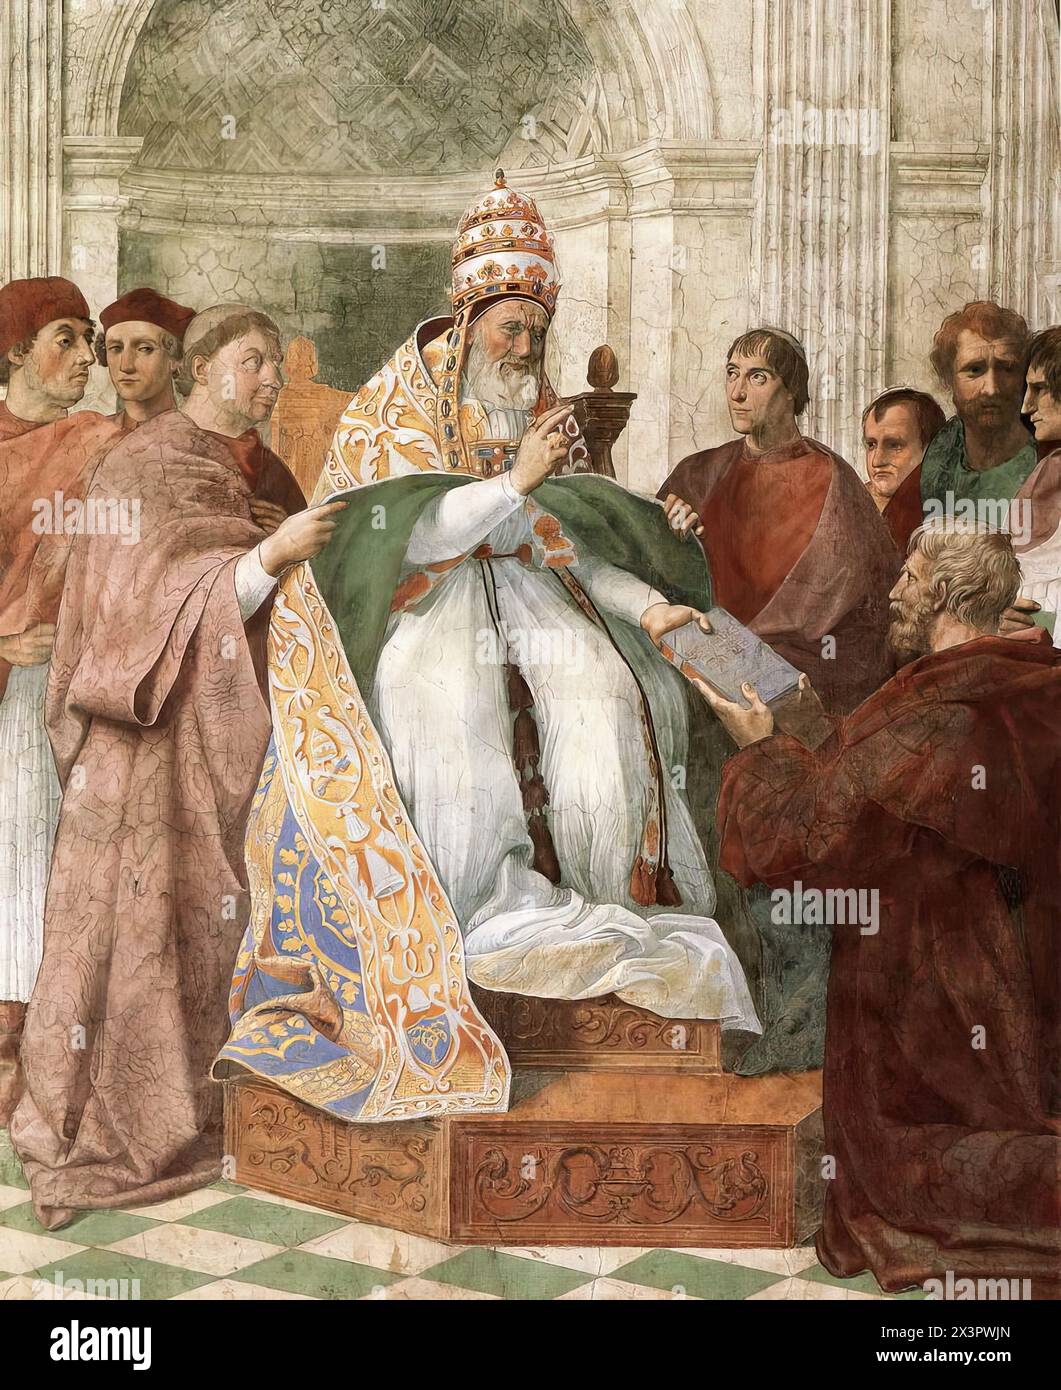 RAFFAELLO Sanzio (* 1483, Urbino, d. 1520, Roma) Gregor IX. Genehmigt die Dekretale 1511 Fresko, Breite an der Basis 220 cm Stanza della Segnatura, Palazzi Pontifici, Vatikan diese Szene basiert auf einem Widmungsbild, wie es oft in der Handschriftenbeleuchtung zu finden ist. Ungewöhnlich ist, dass sich Papst Julius II. Als Papst Gregor IX. Darstellen ließ. Sein Bart hilft bei der Datierung des Freskos, da bekannt ist, dass er sich nach dem Herbst 1511 nie wieder rasiert hat. Kardinal Giovanni de' Medici, später Leo X., steht ganz links des Papstes. --- Schlüsselwörter: ----------------- Autor: Stockfoto